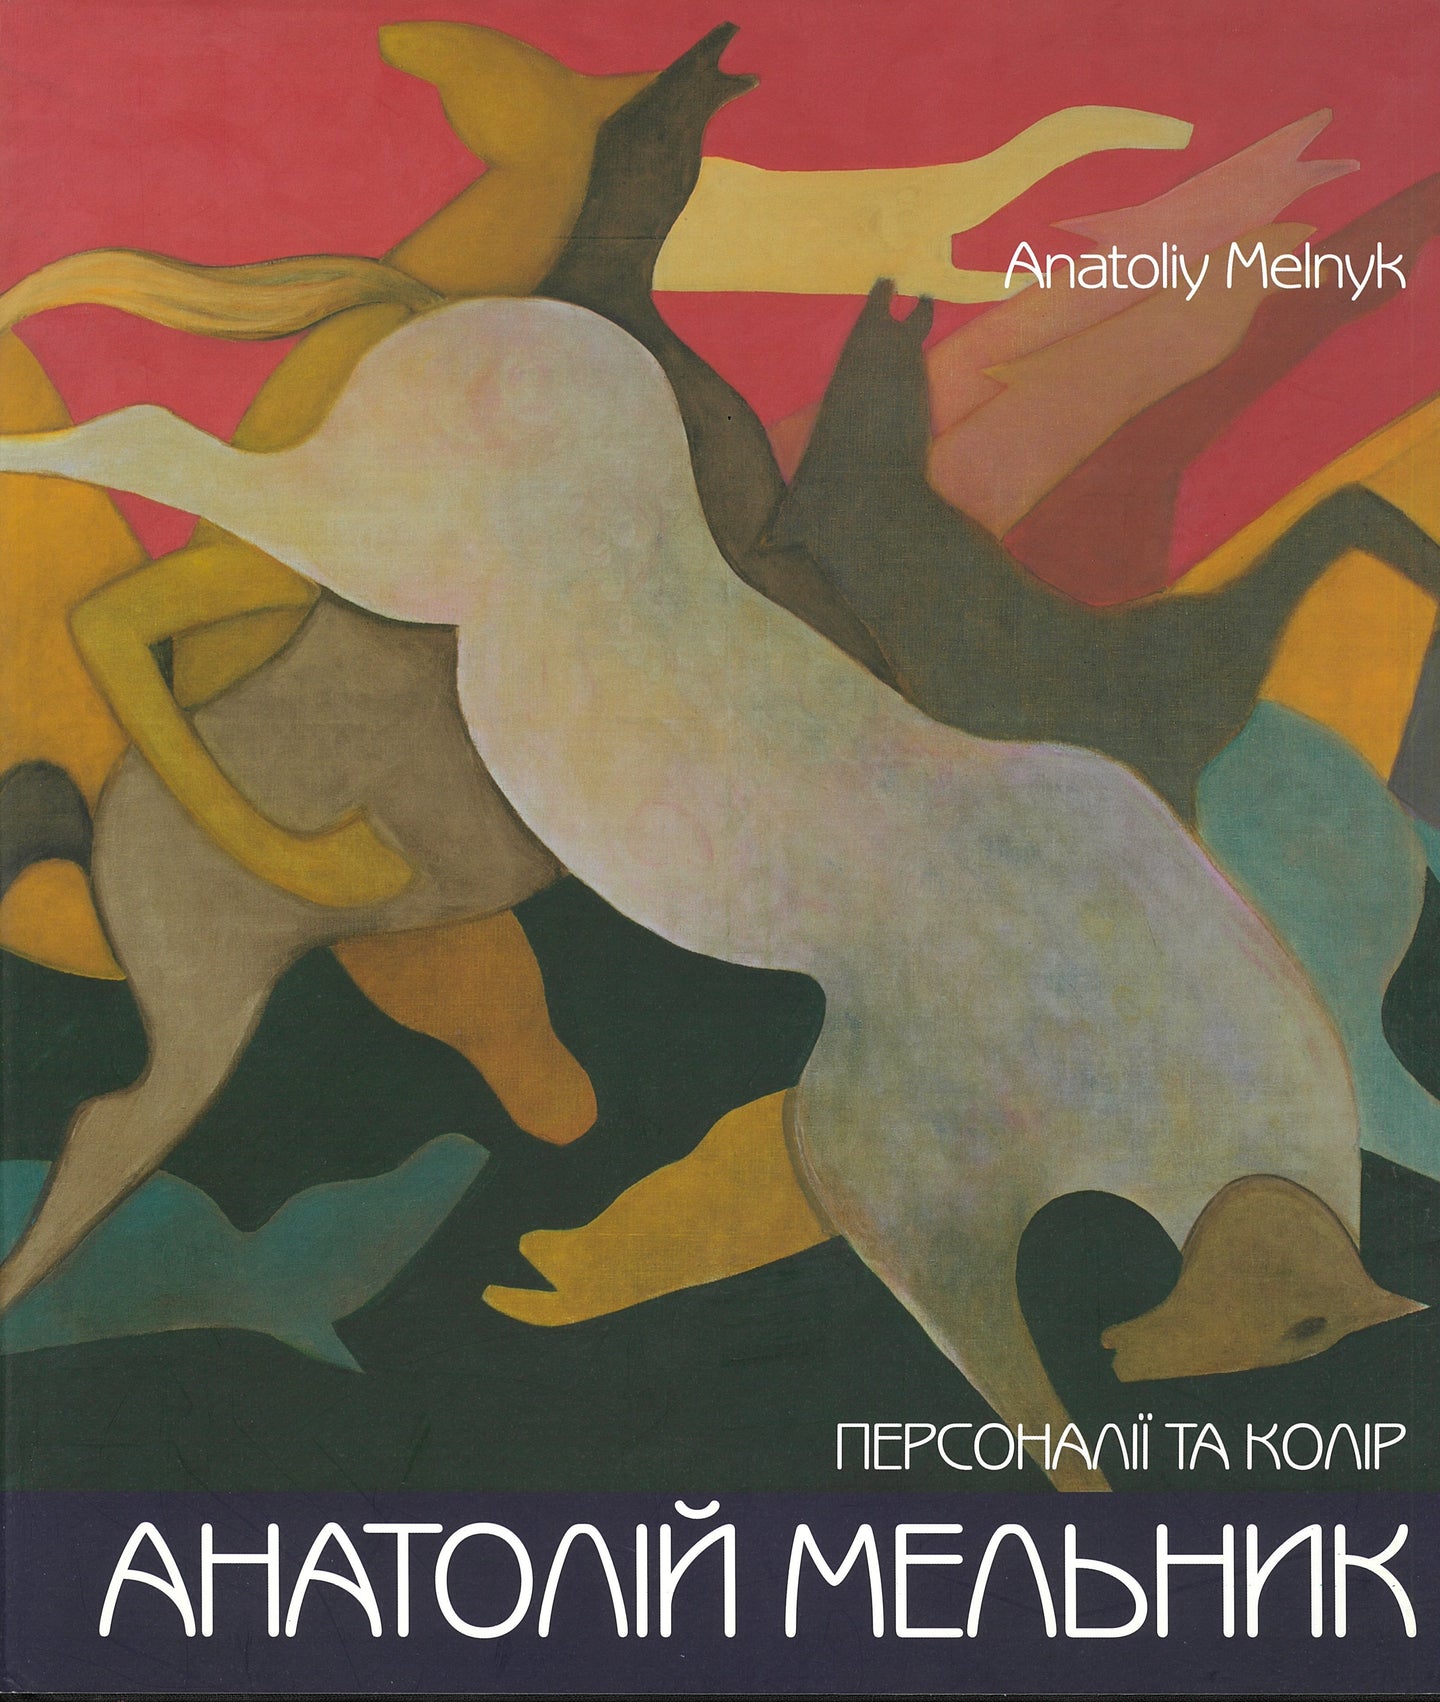 Anatoliy Melnyk